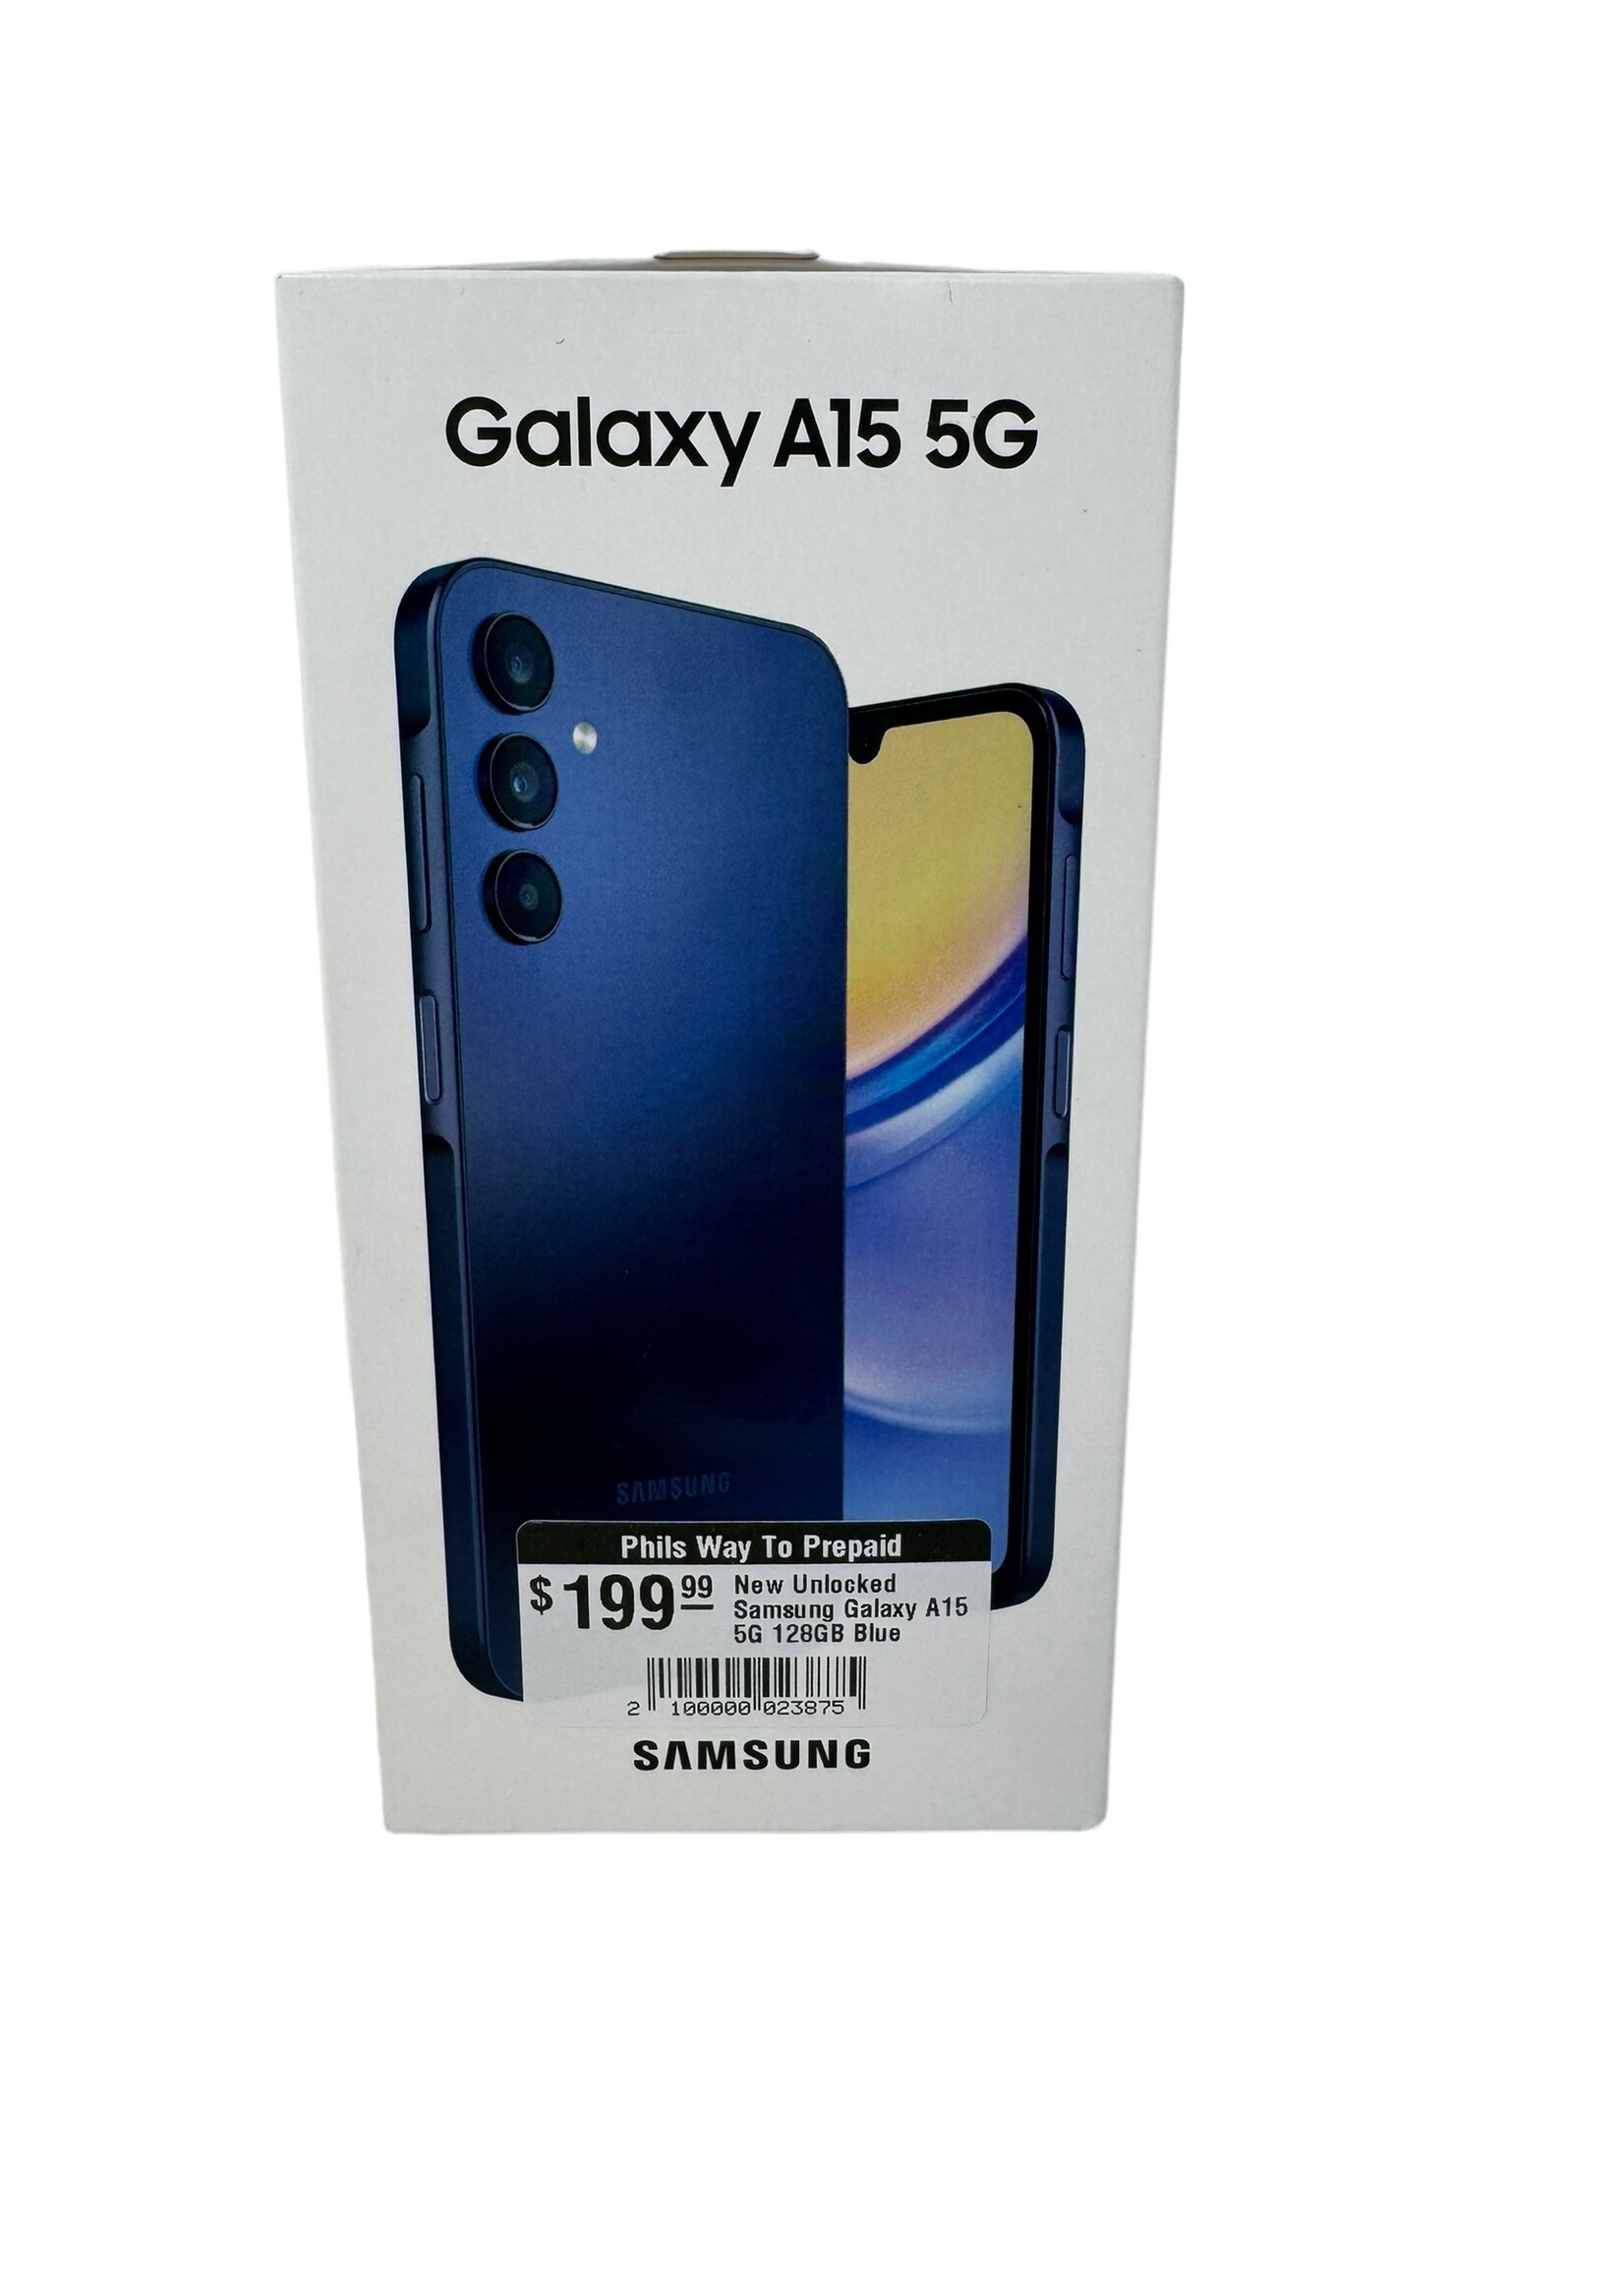 Samsung New Unlocked Samsung Galaxy A15 5G 128GB Blue